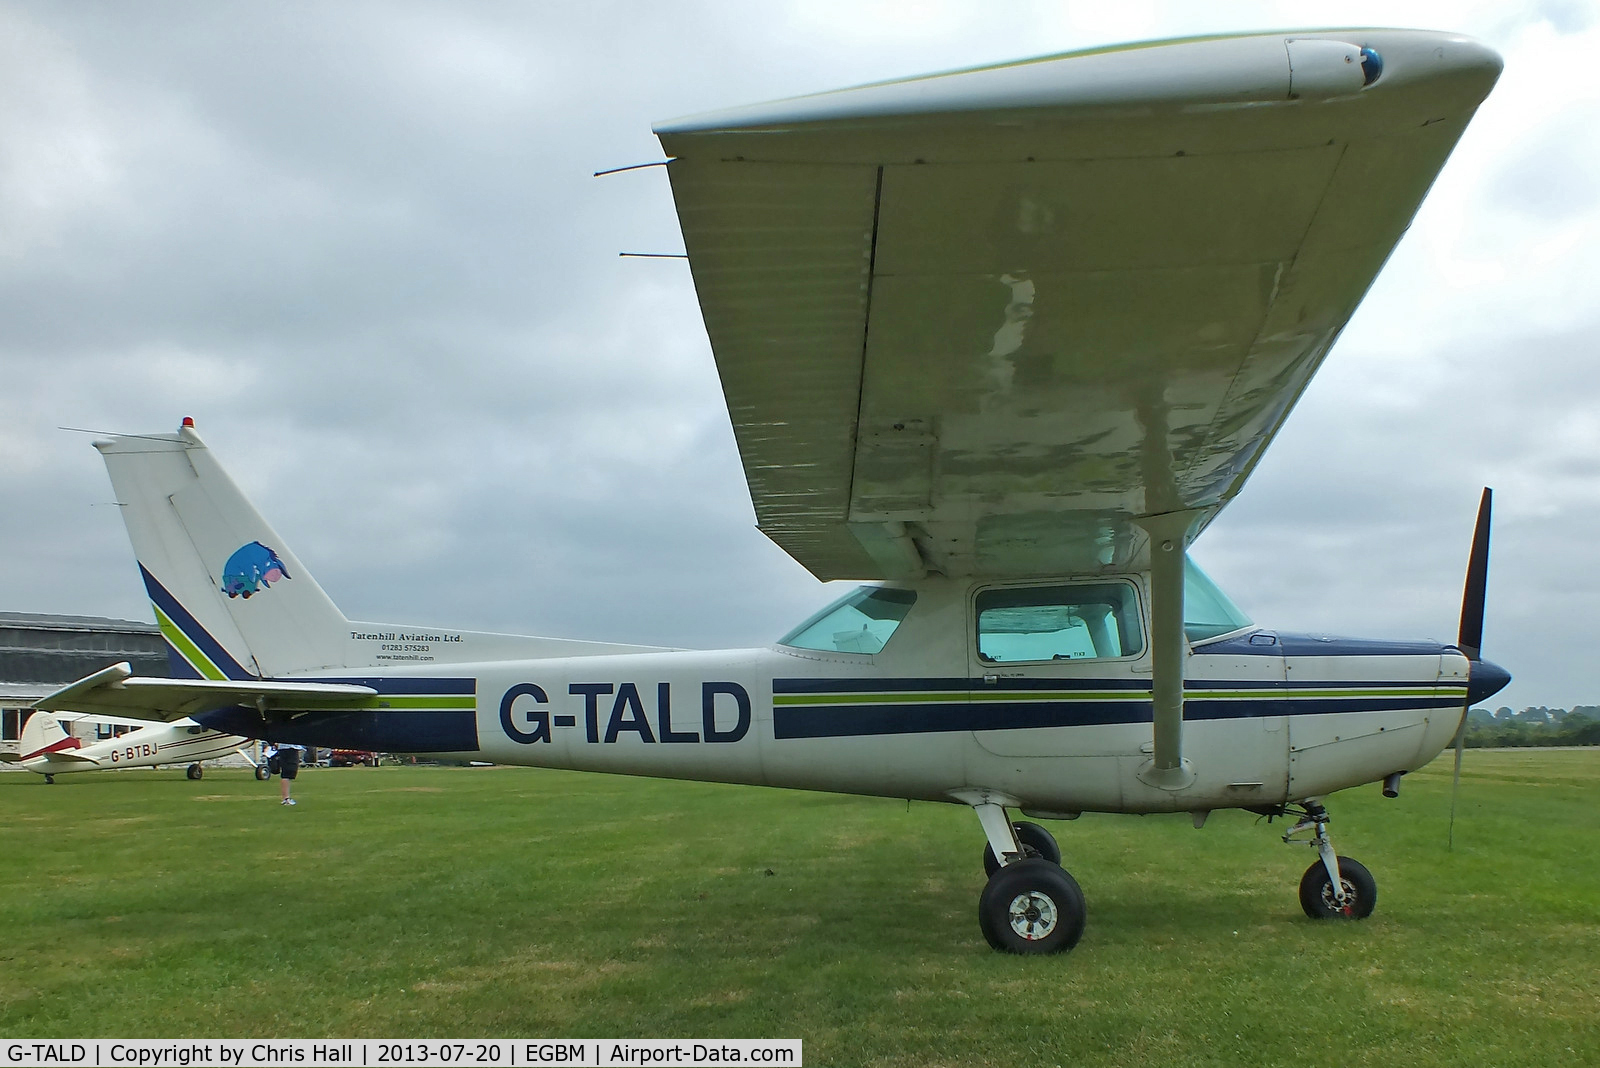 G-TALD, 1980 Reims F152 C/N 1718, Tatenhill Aviation